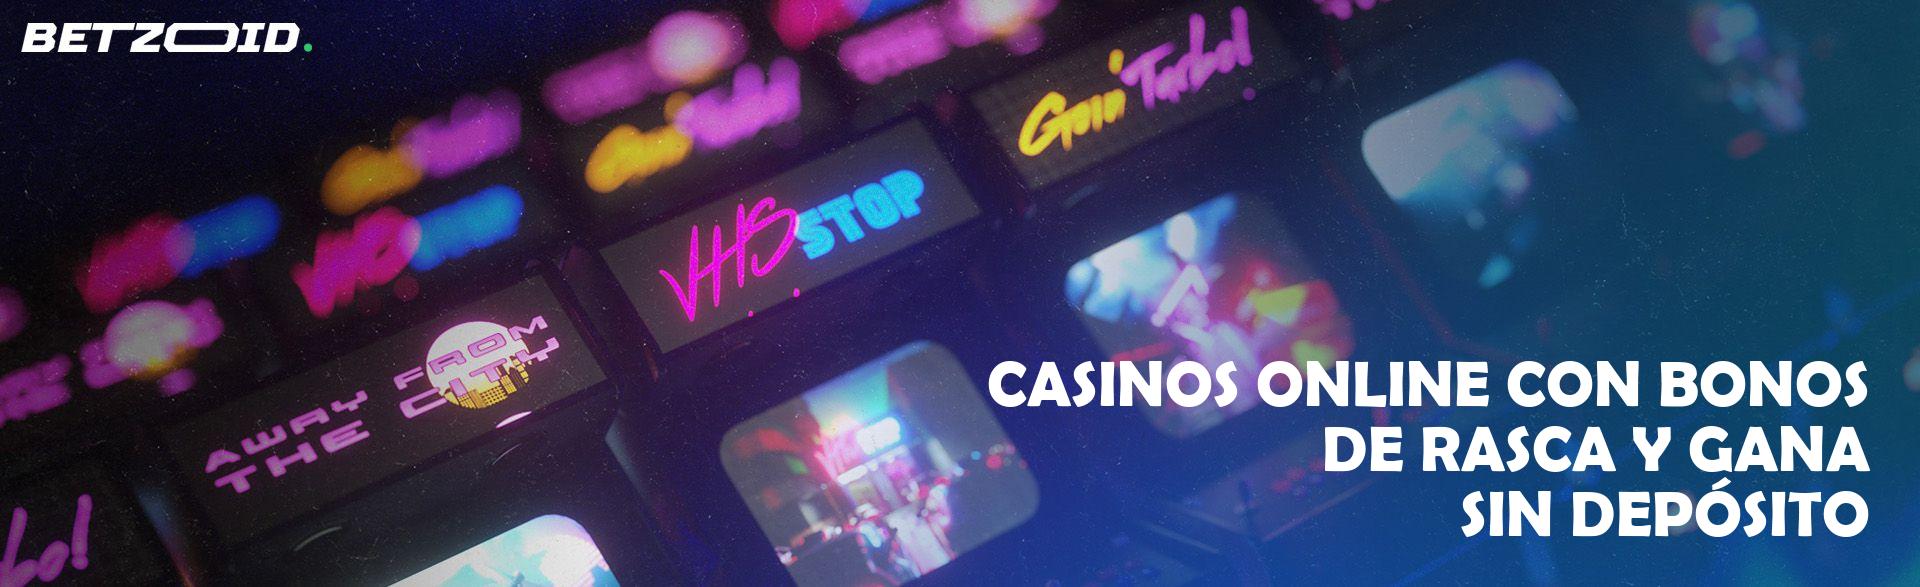 Casinos Online con Bonos de Rasca Y Gana sin Depósito.